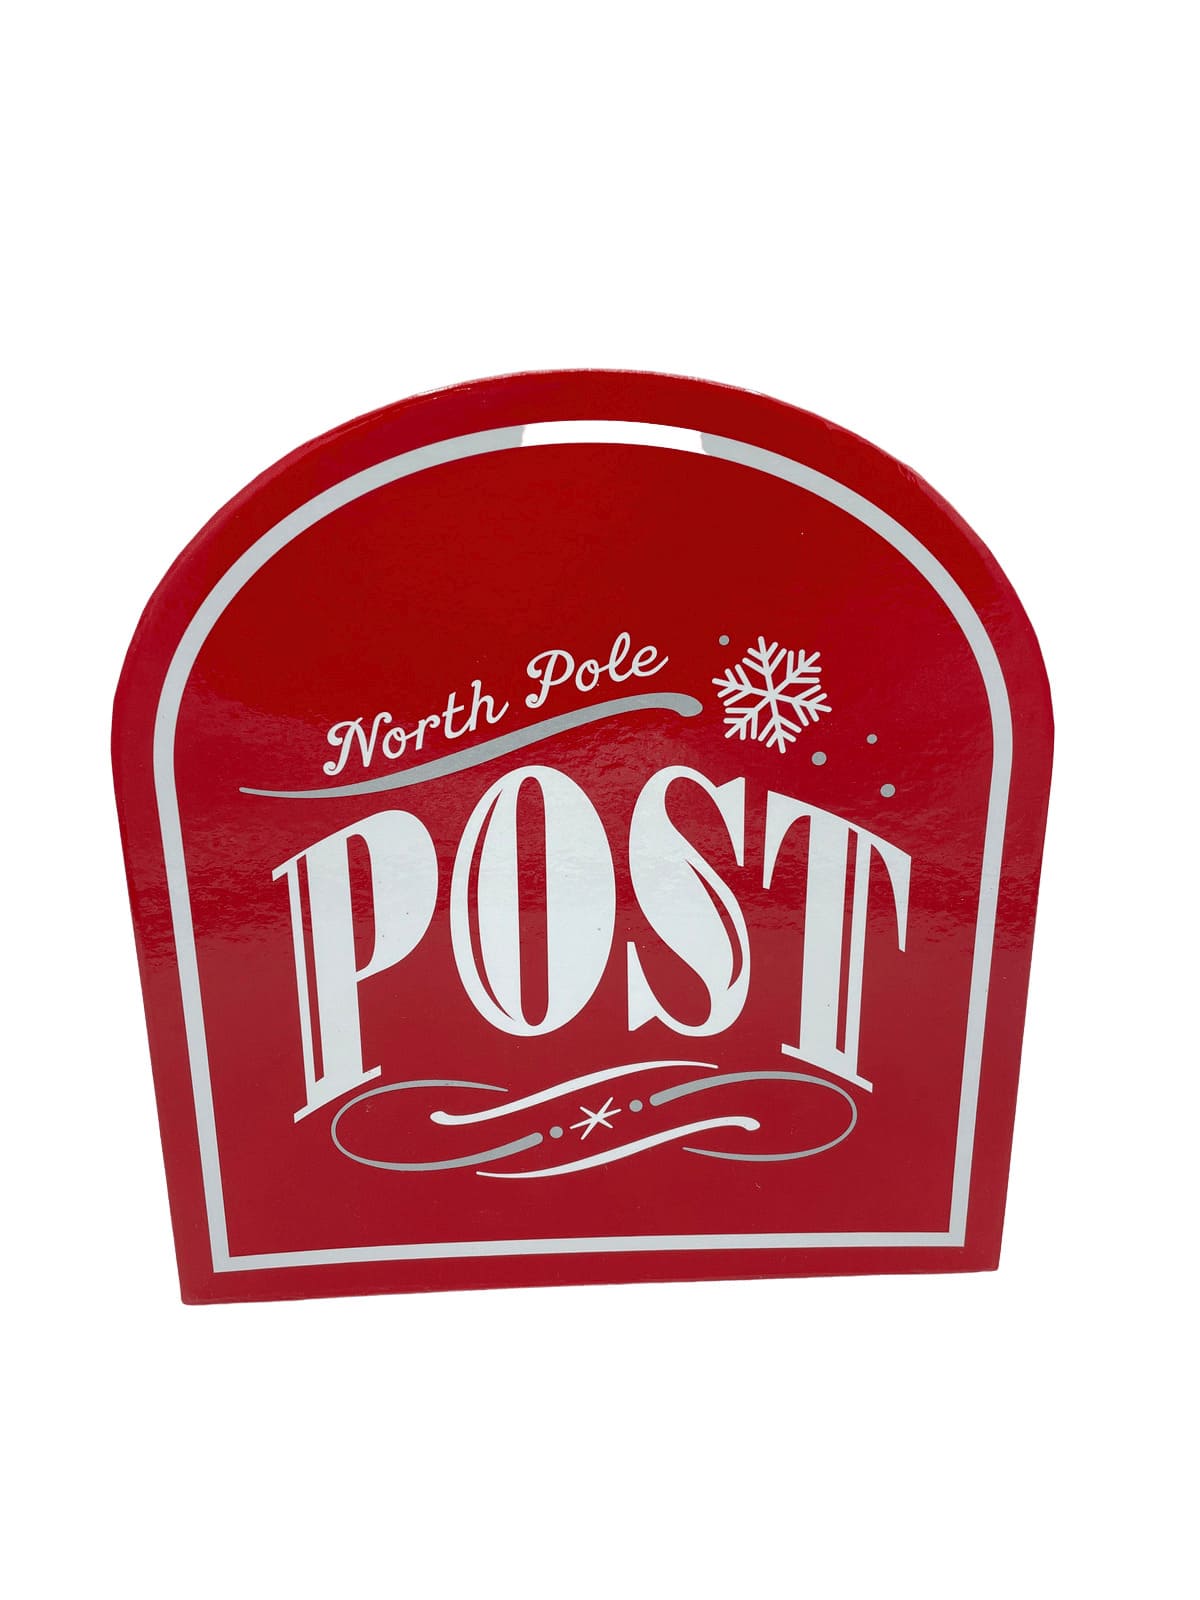 casella postale north pole